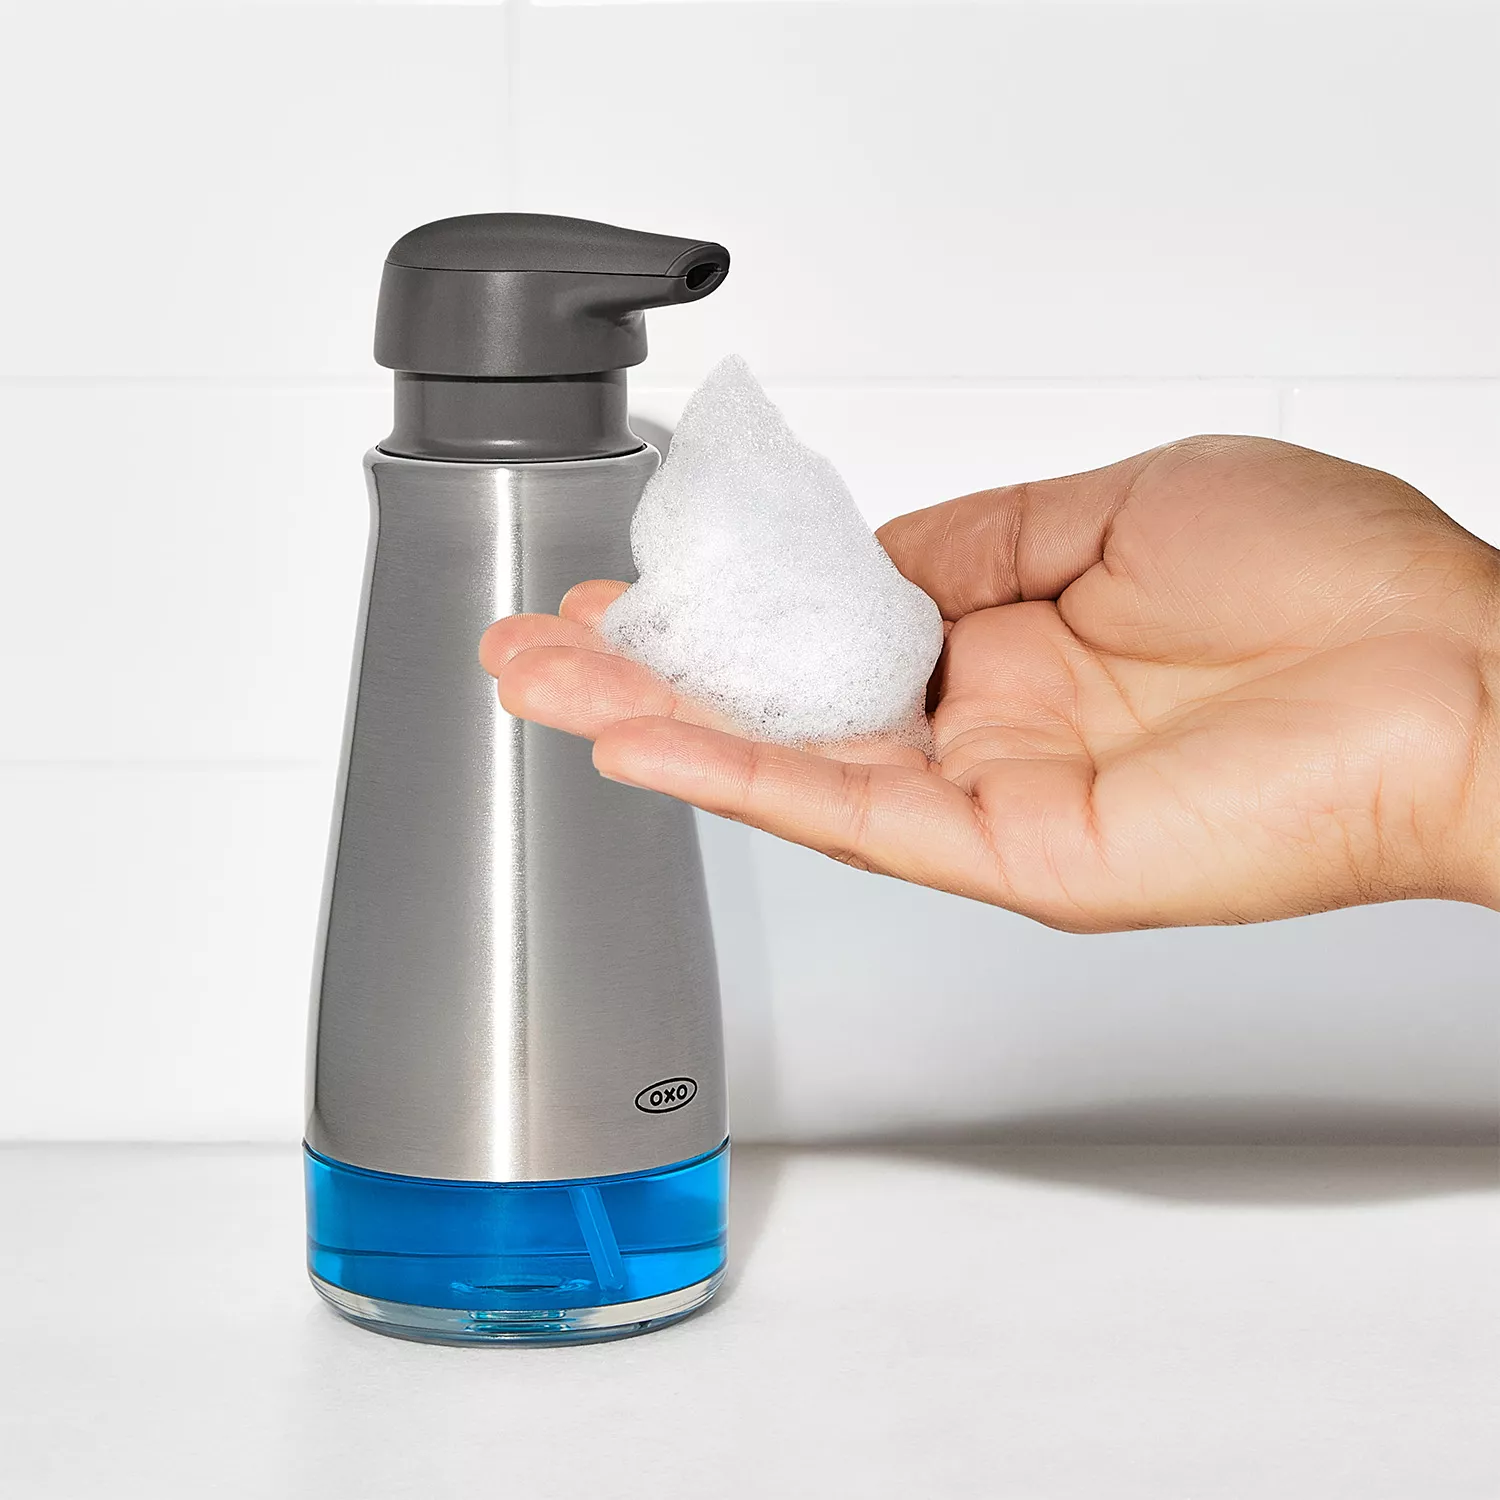 OXO Good Grips Foaming Soap Dispenser